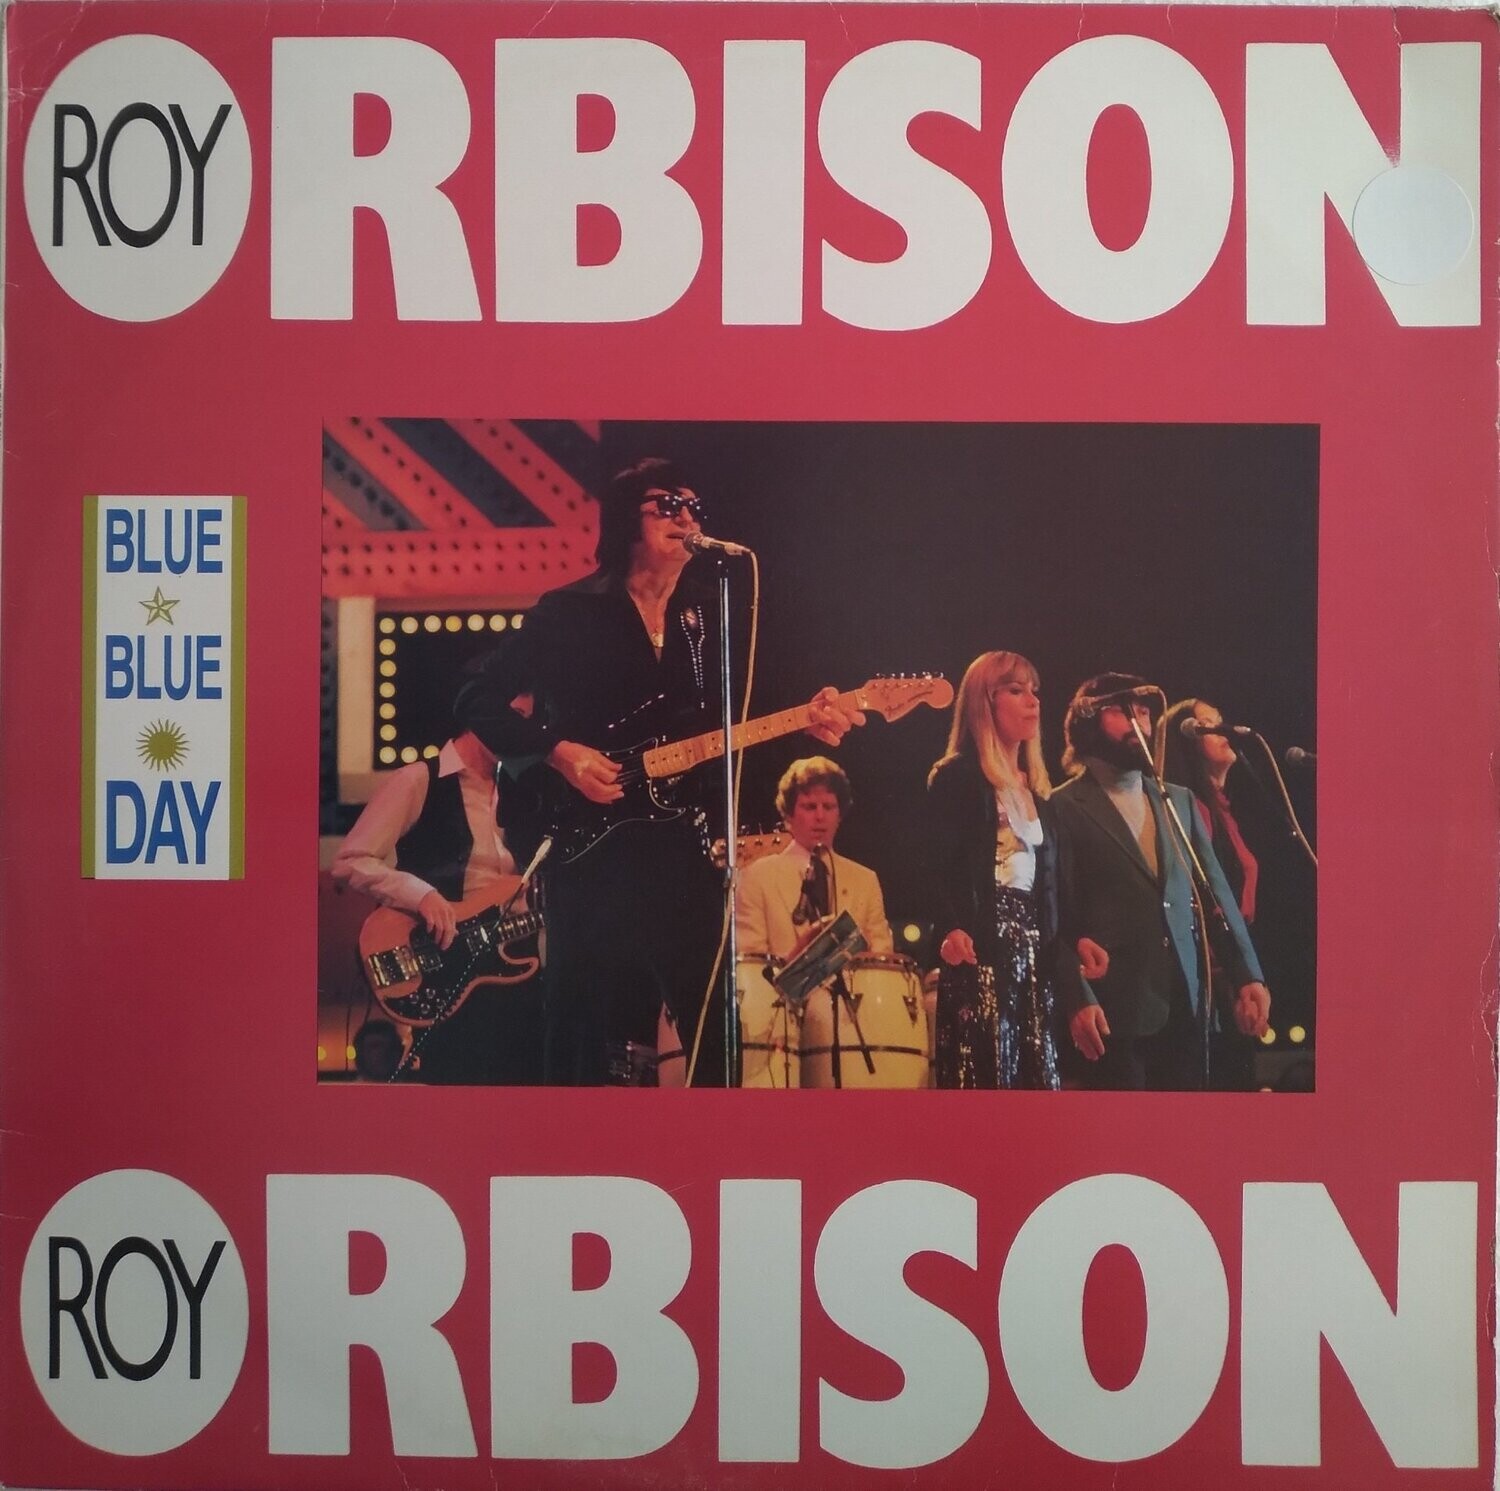 Roy Orbison – Blue Blue Day (1990)